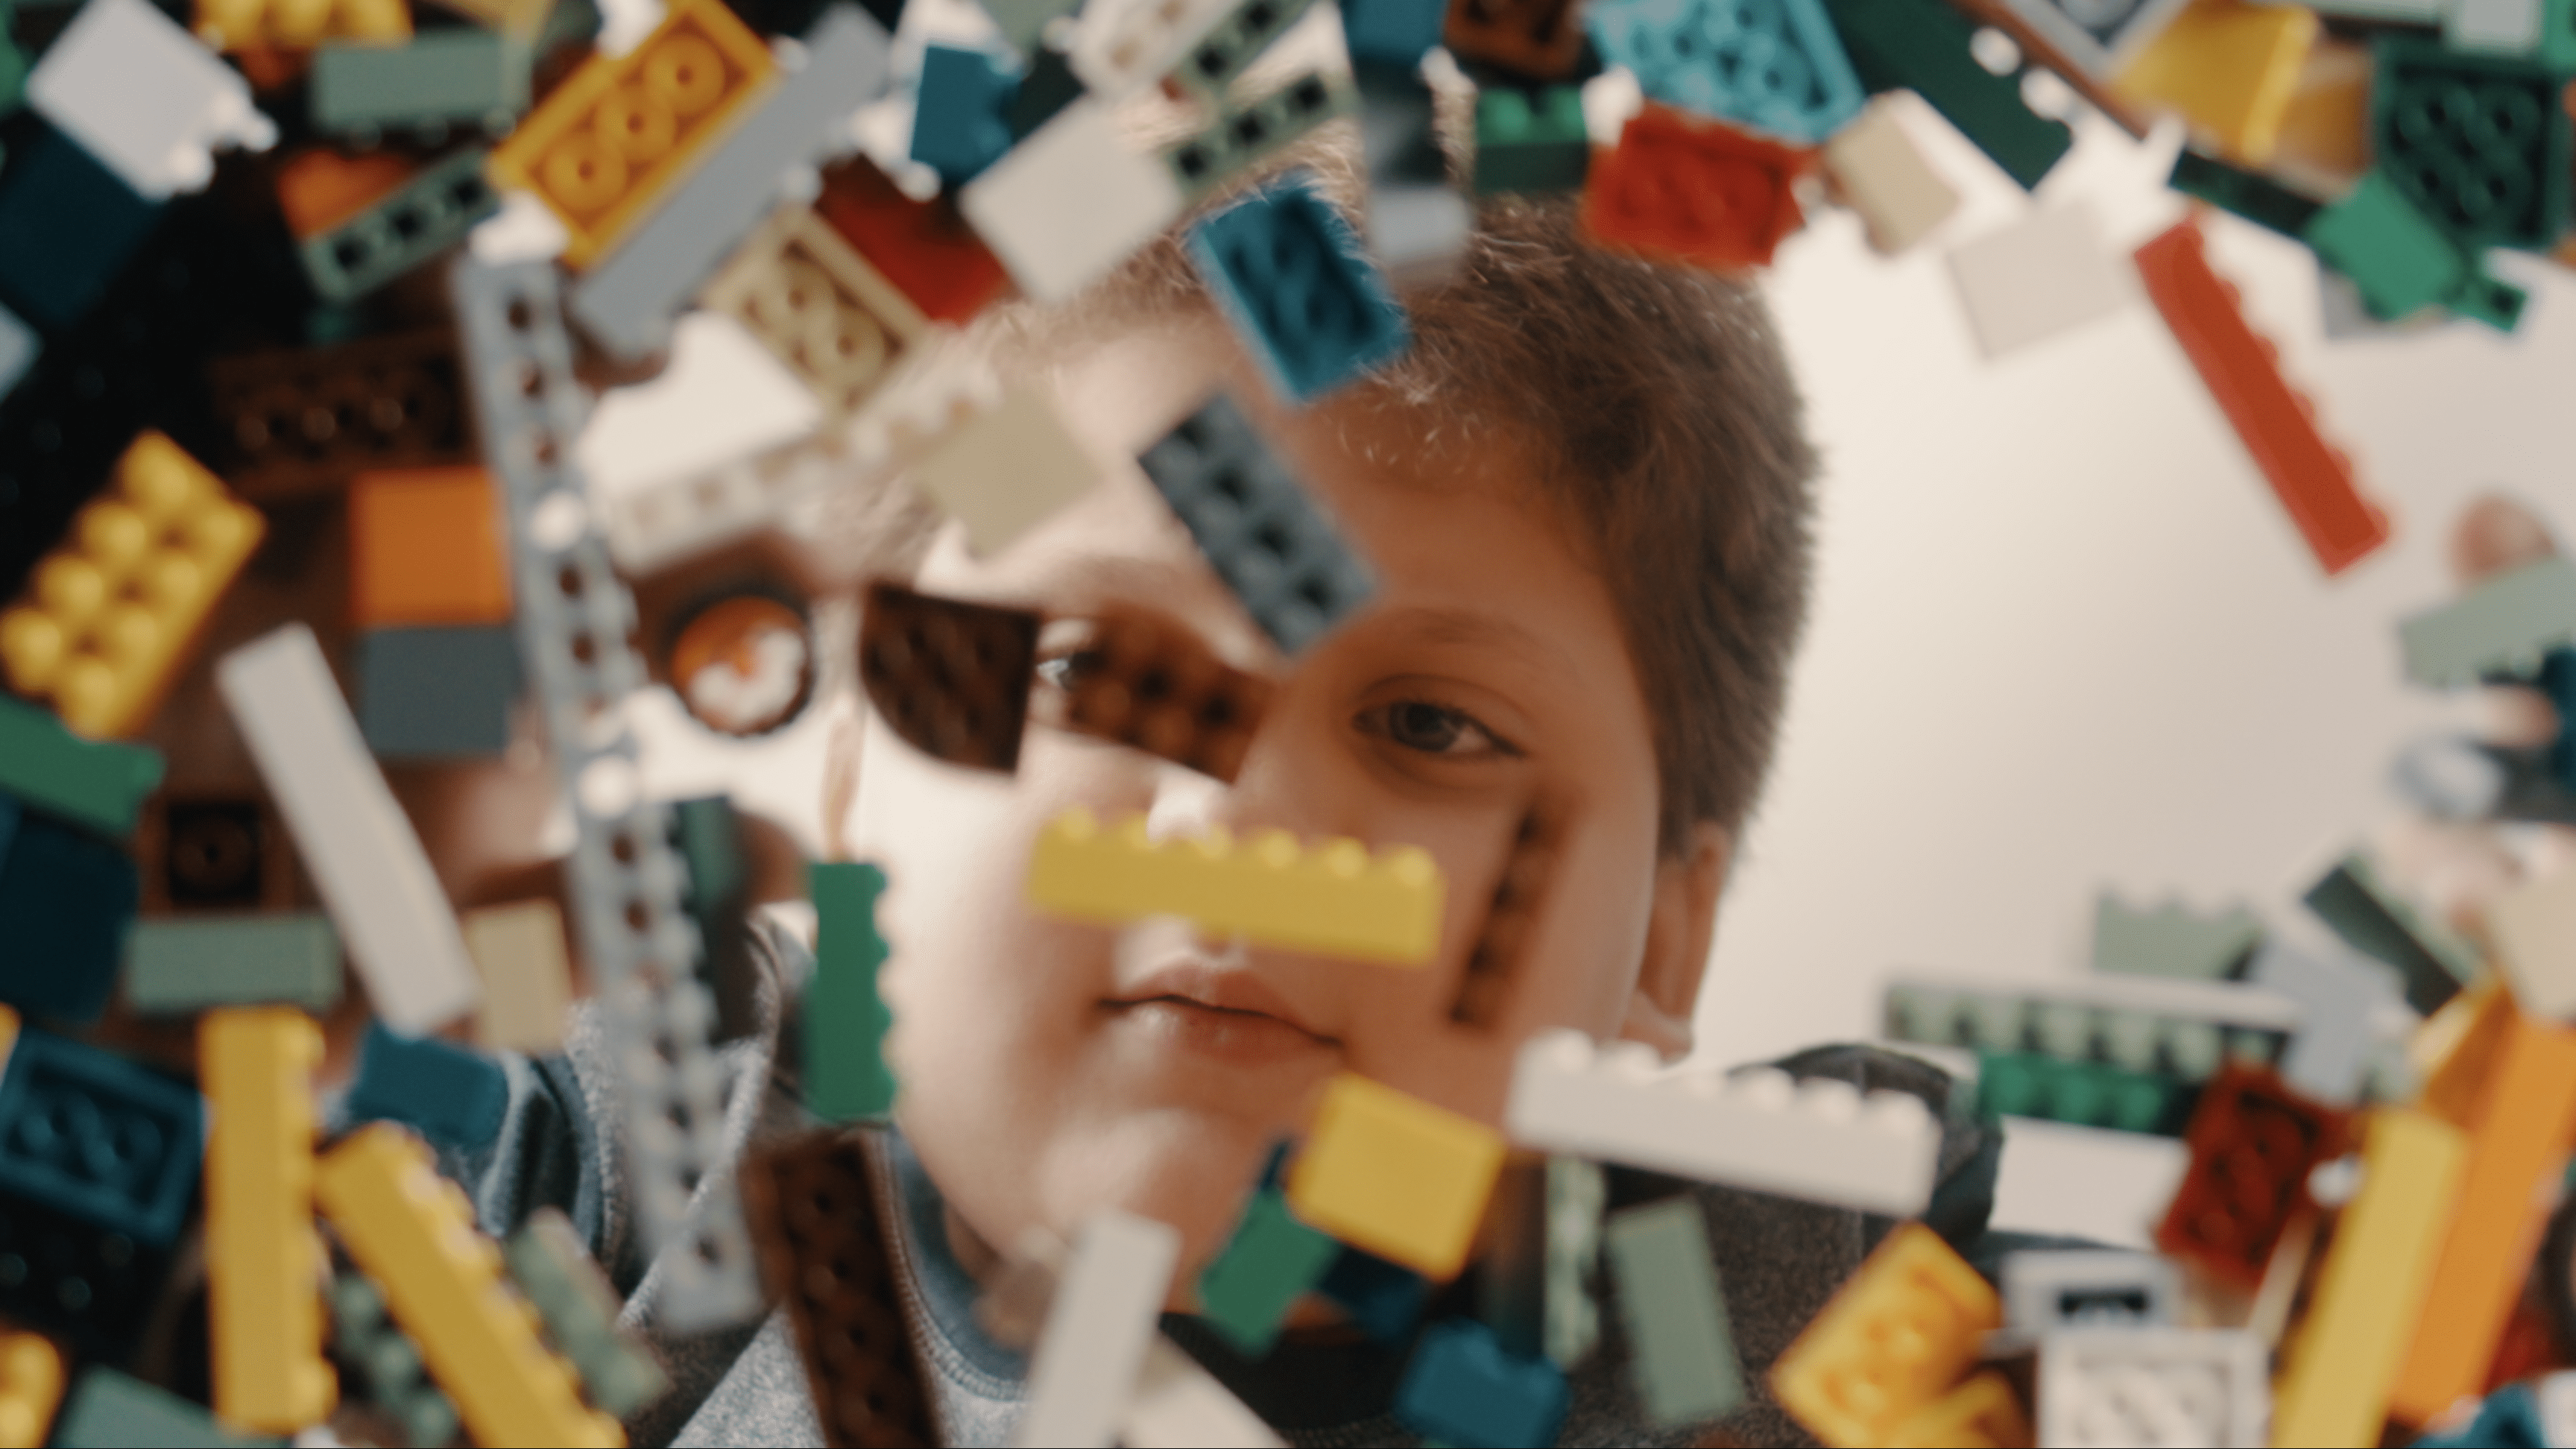 Asteroide e Grey Dubai inspiram as crianças a quebrarem as regras com LEGO